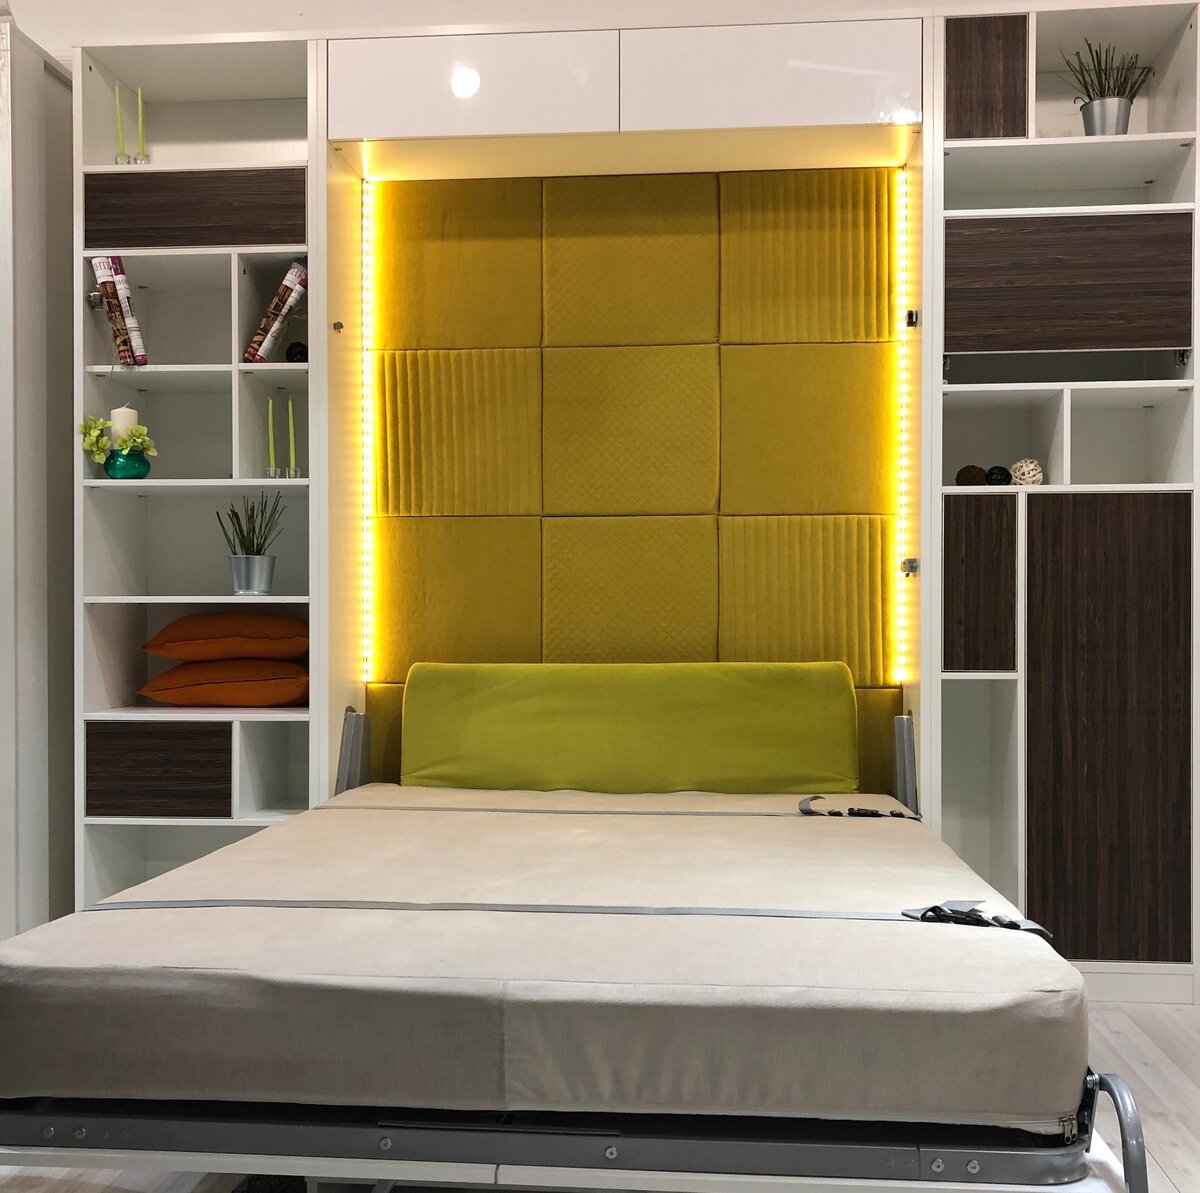 Кровать-трансформер для малогабаритной квартиры: виды конструкций и цены